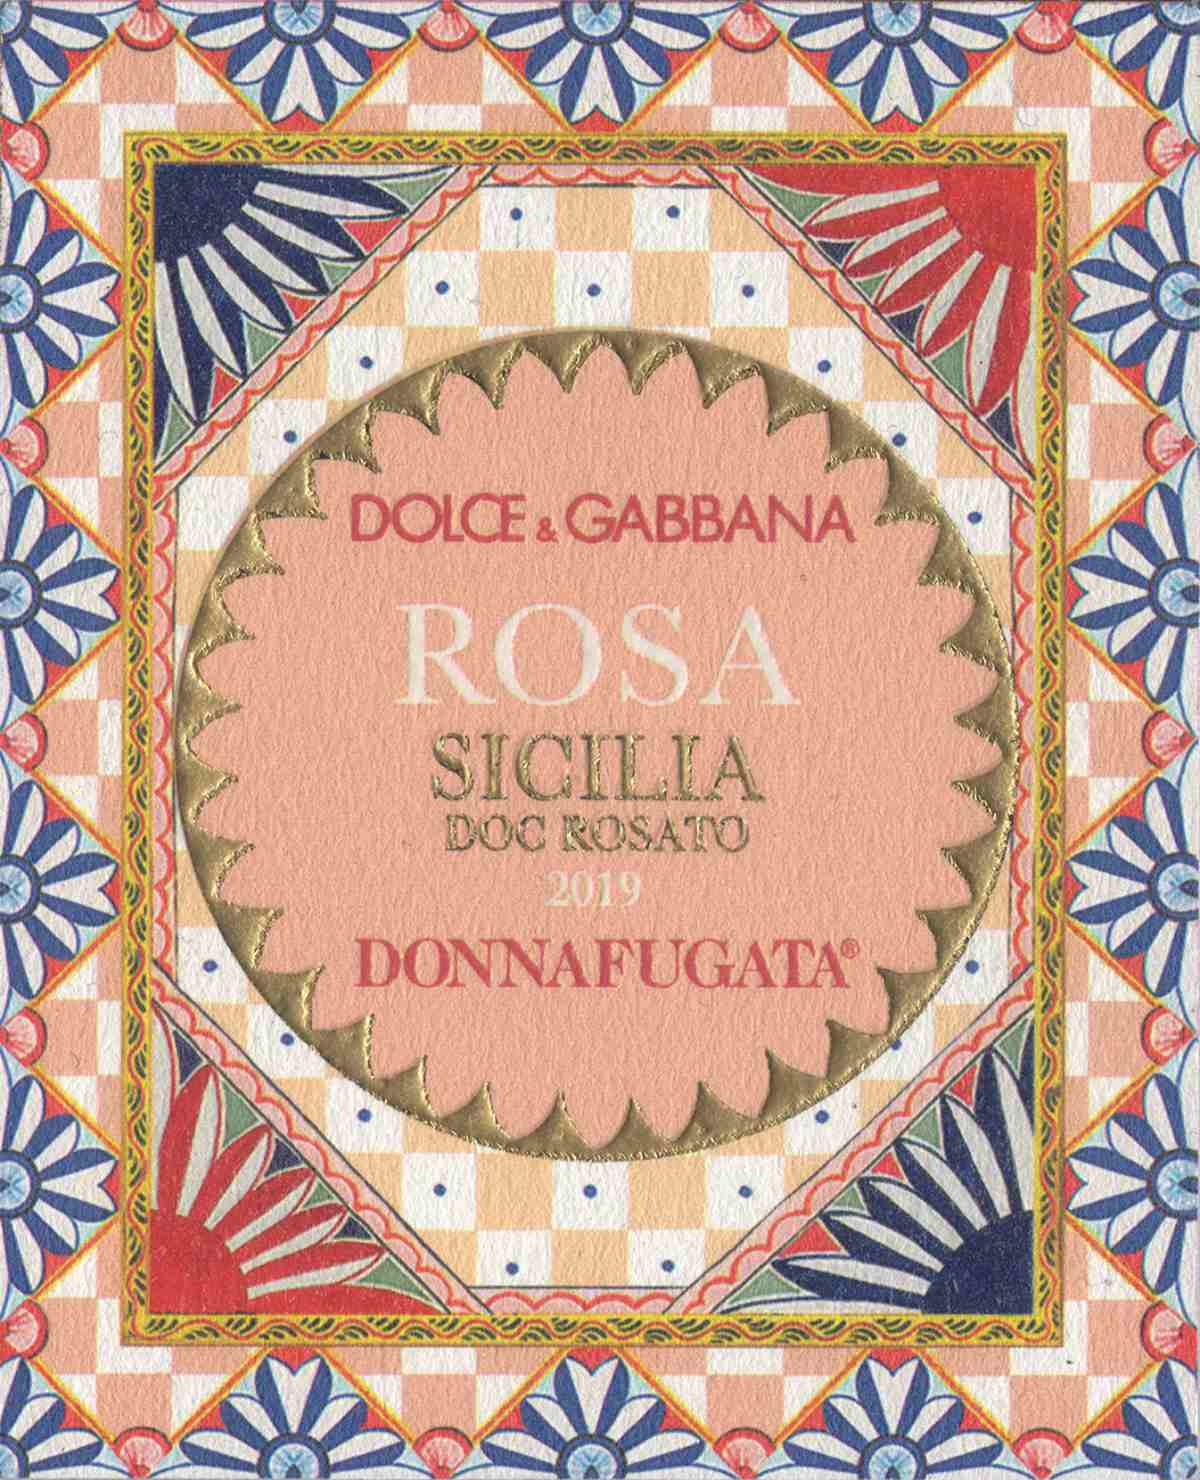 Dolce&Gabbana and Donnafugata: Rosa